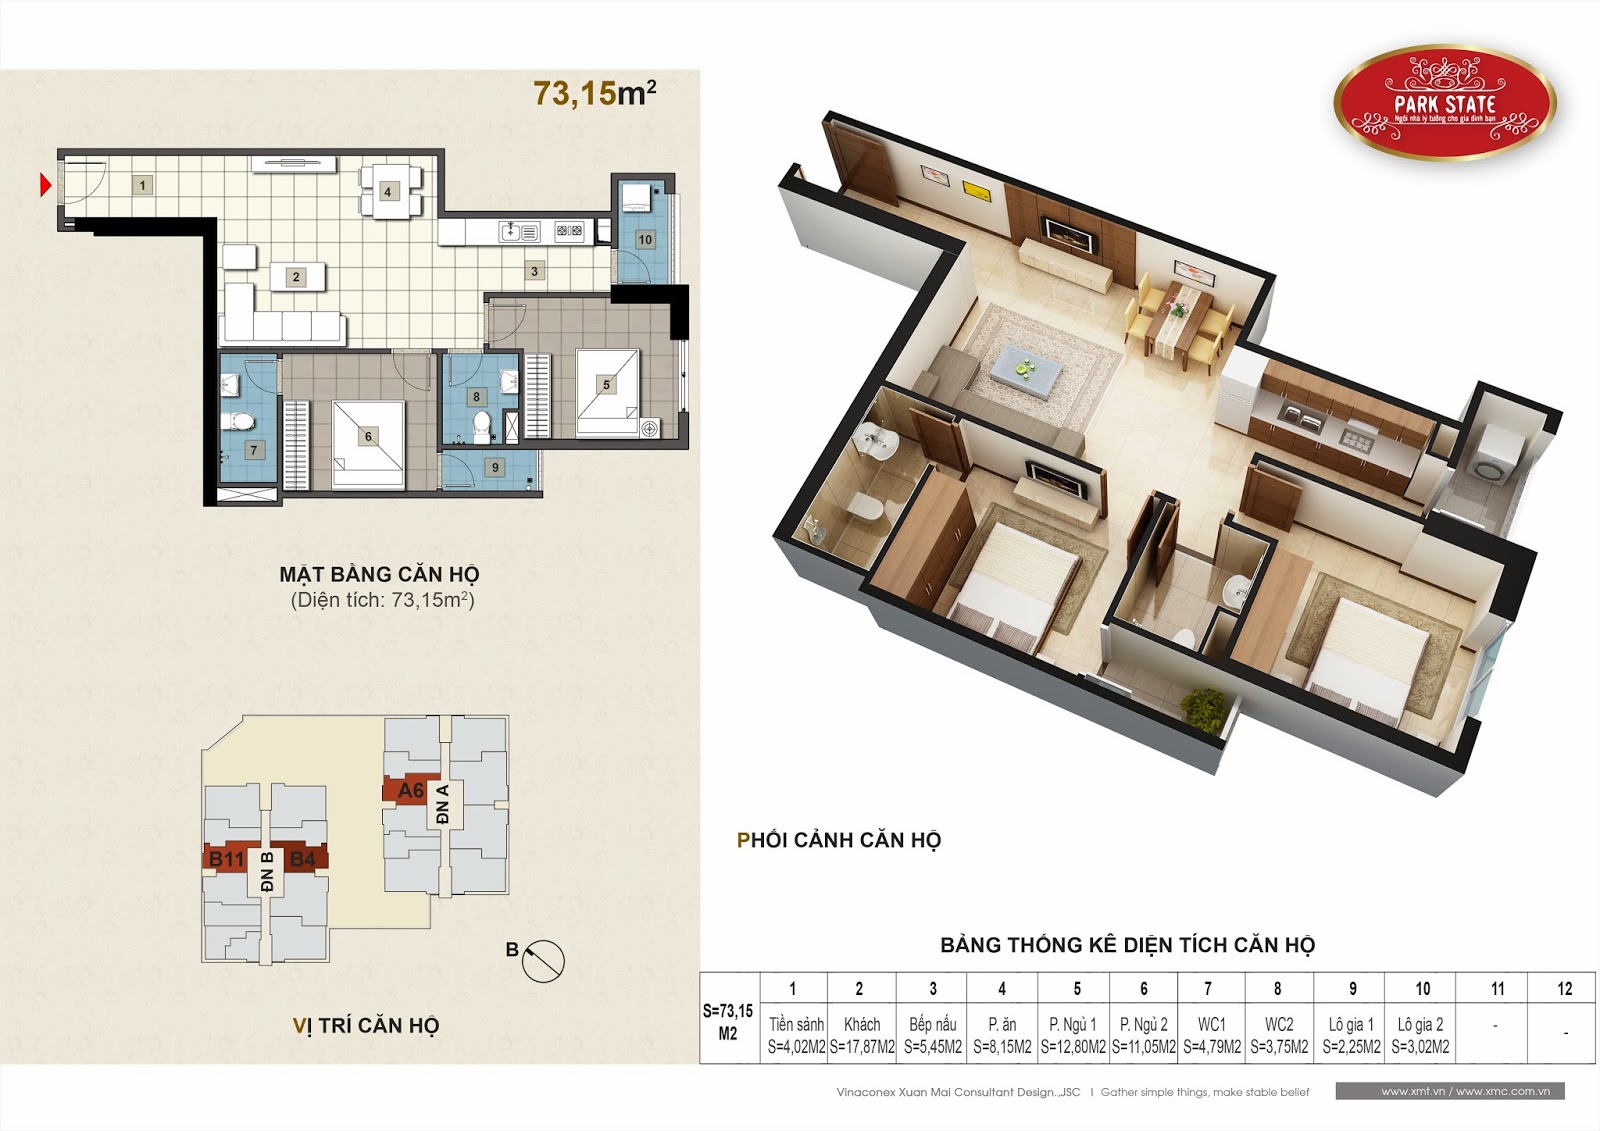 Sở hữu căn hộ chung cư cao cấp tại trung tâm quận Hà Đông chỉ với 900 triệu 008+Can+ho+73,15m2-V1